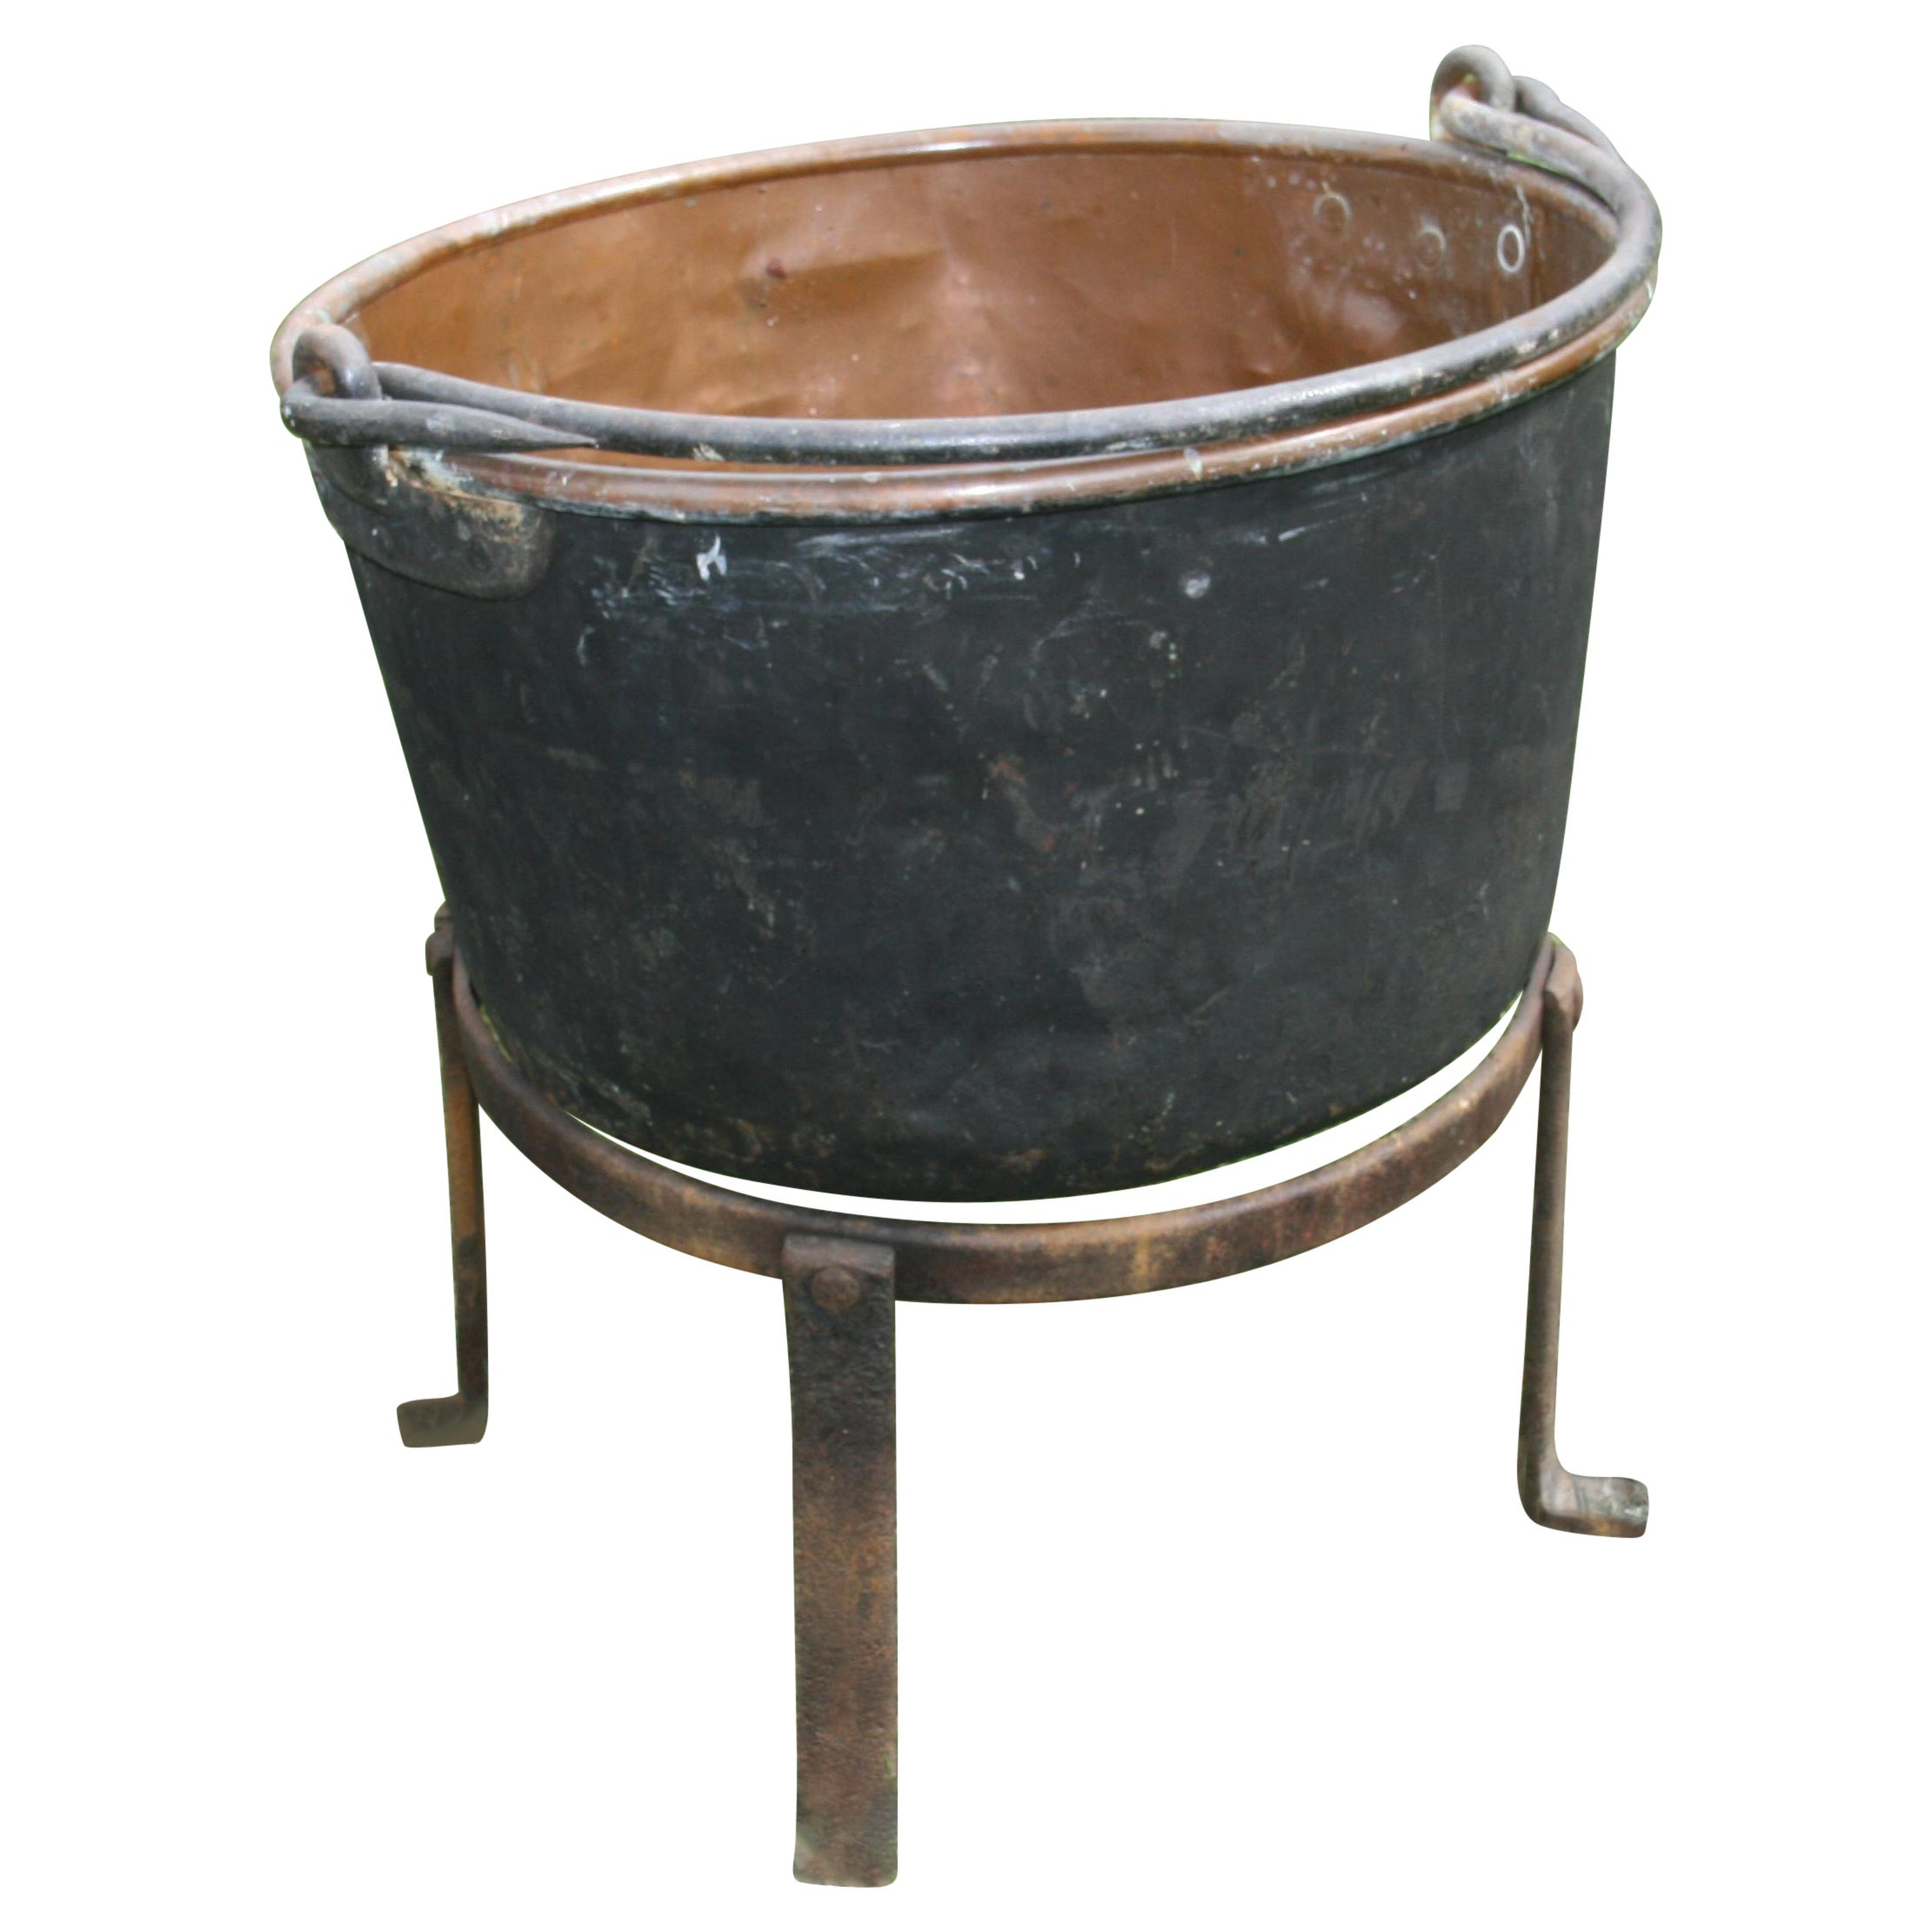 Grand cuivre  Pot à chaudron du 19ème siècle sur socle en fer, jardinière/boîte à logs